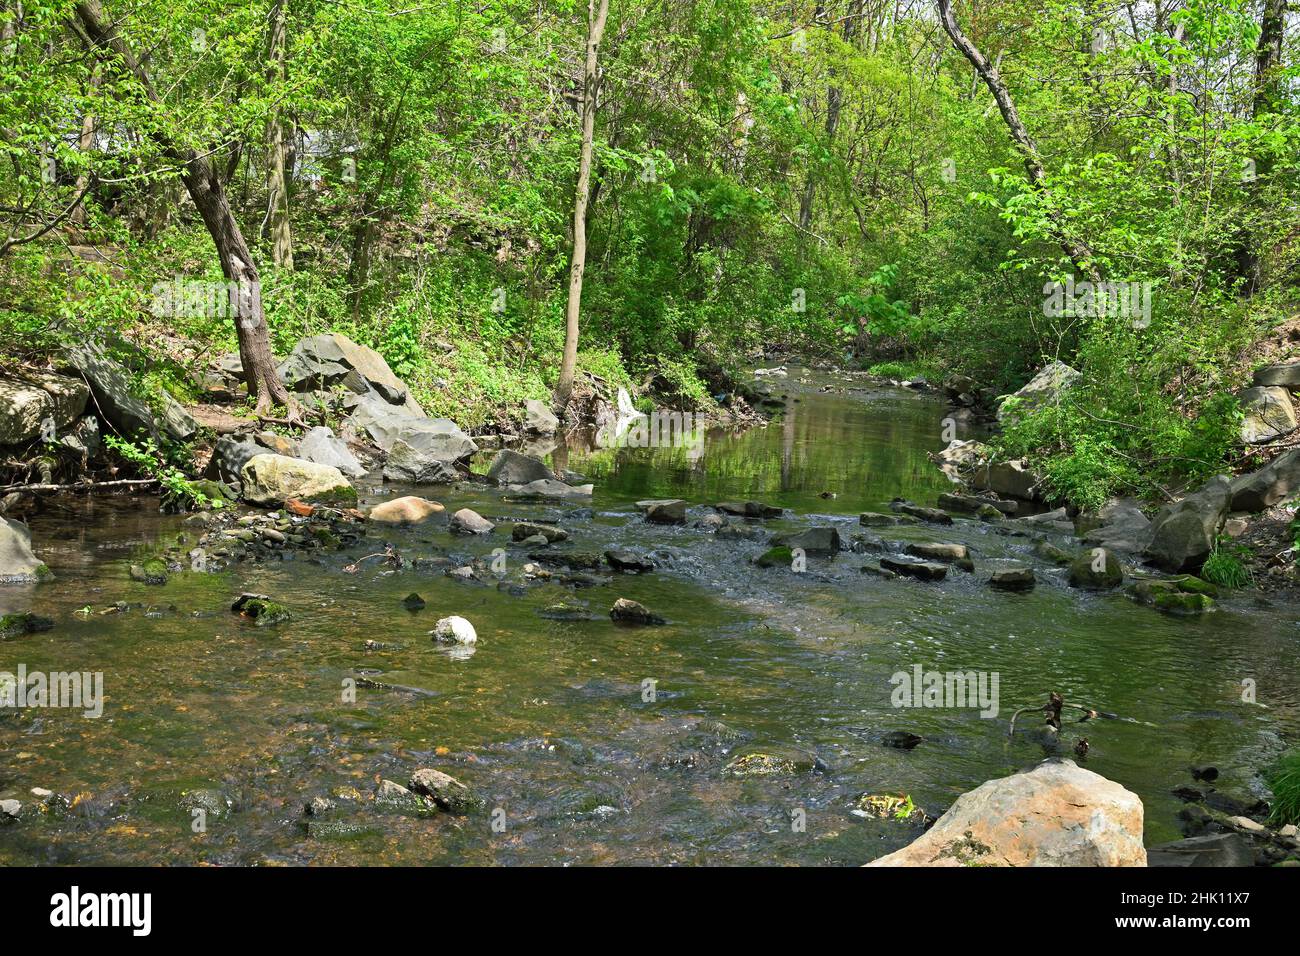 Bel torrente, piccolo fiume che scorre, con riflessi, alberi, rocce e parte di uno spartiacque, estuario Foto Stock